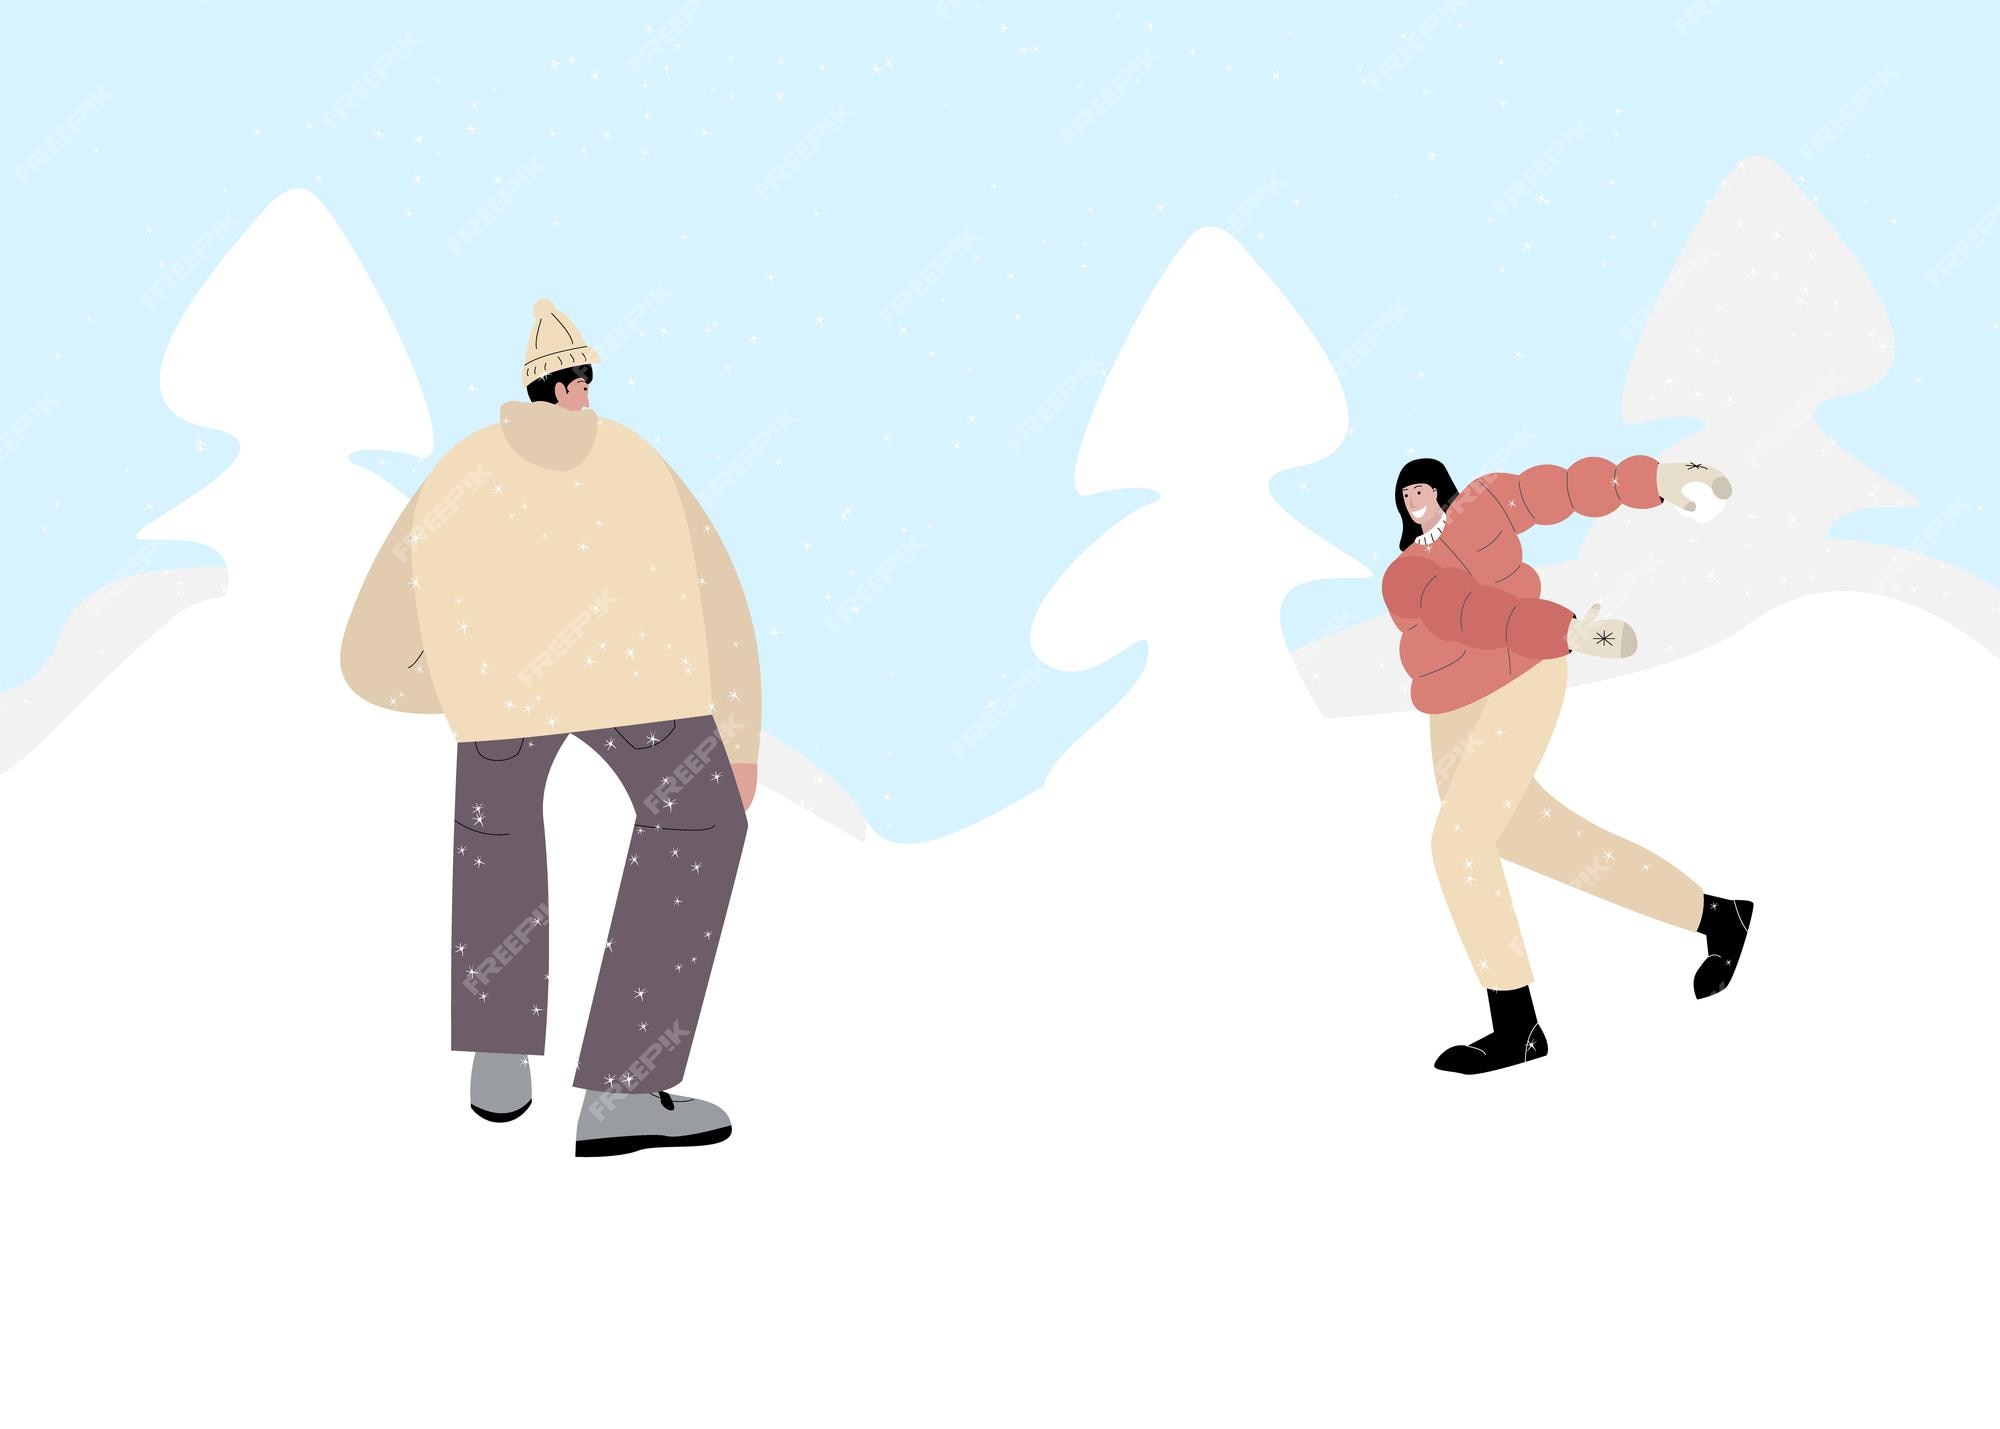 mulher e um homem jogam um jogo divertido de bolas de neve na ilustração  vetorial de paisagem de neve de inverno. personagens de amigos de desenho  animado brincando ao ar livre, aproveitando o clima frio. conceito de  atividade saudável de inverno